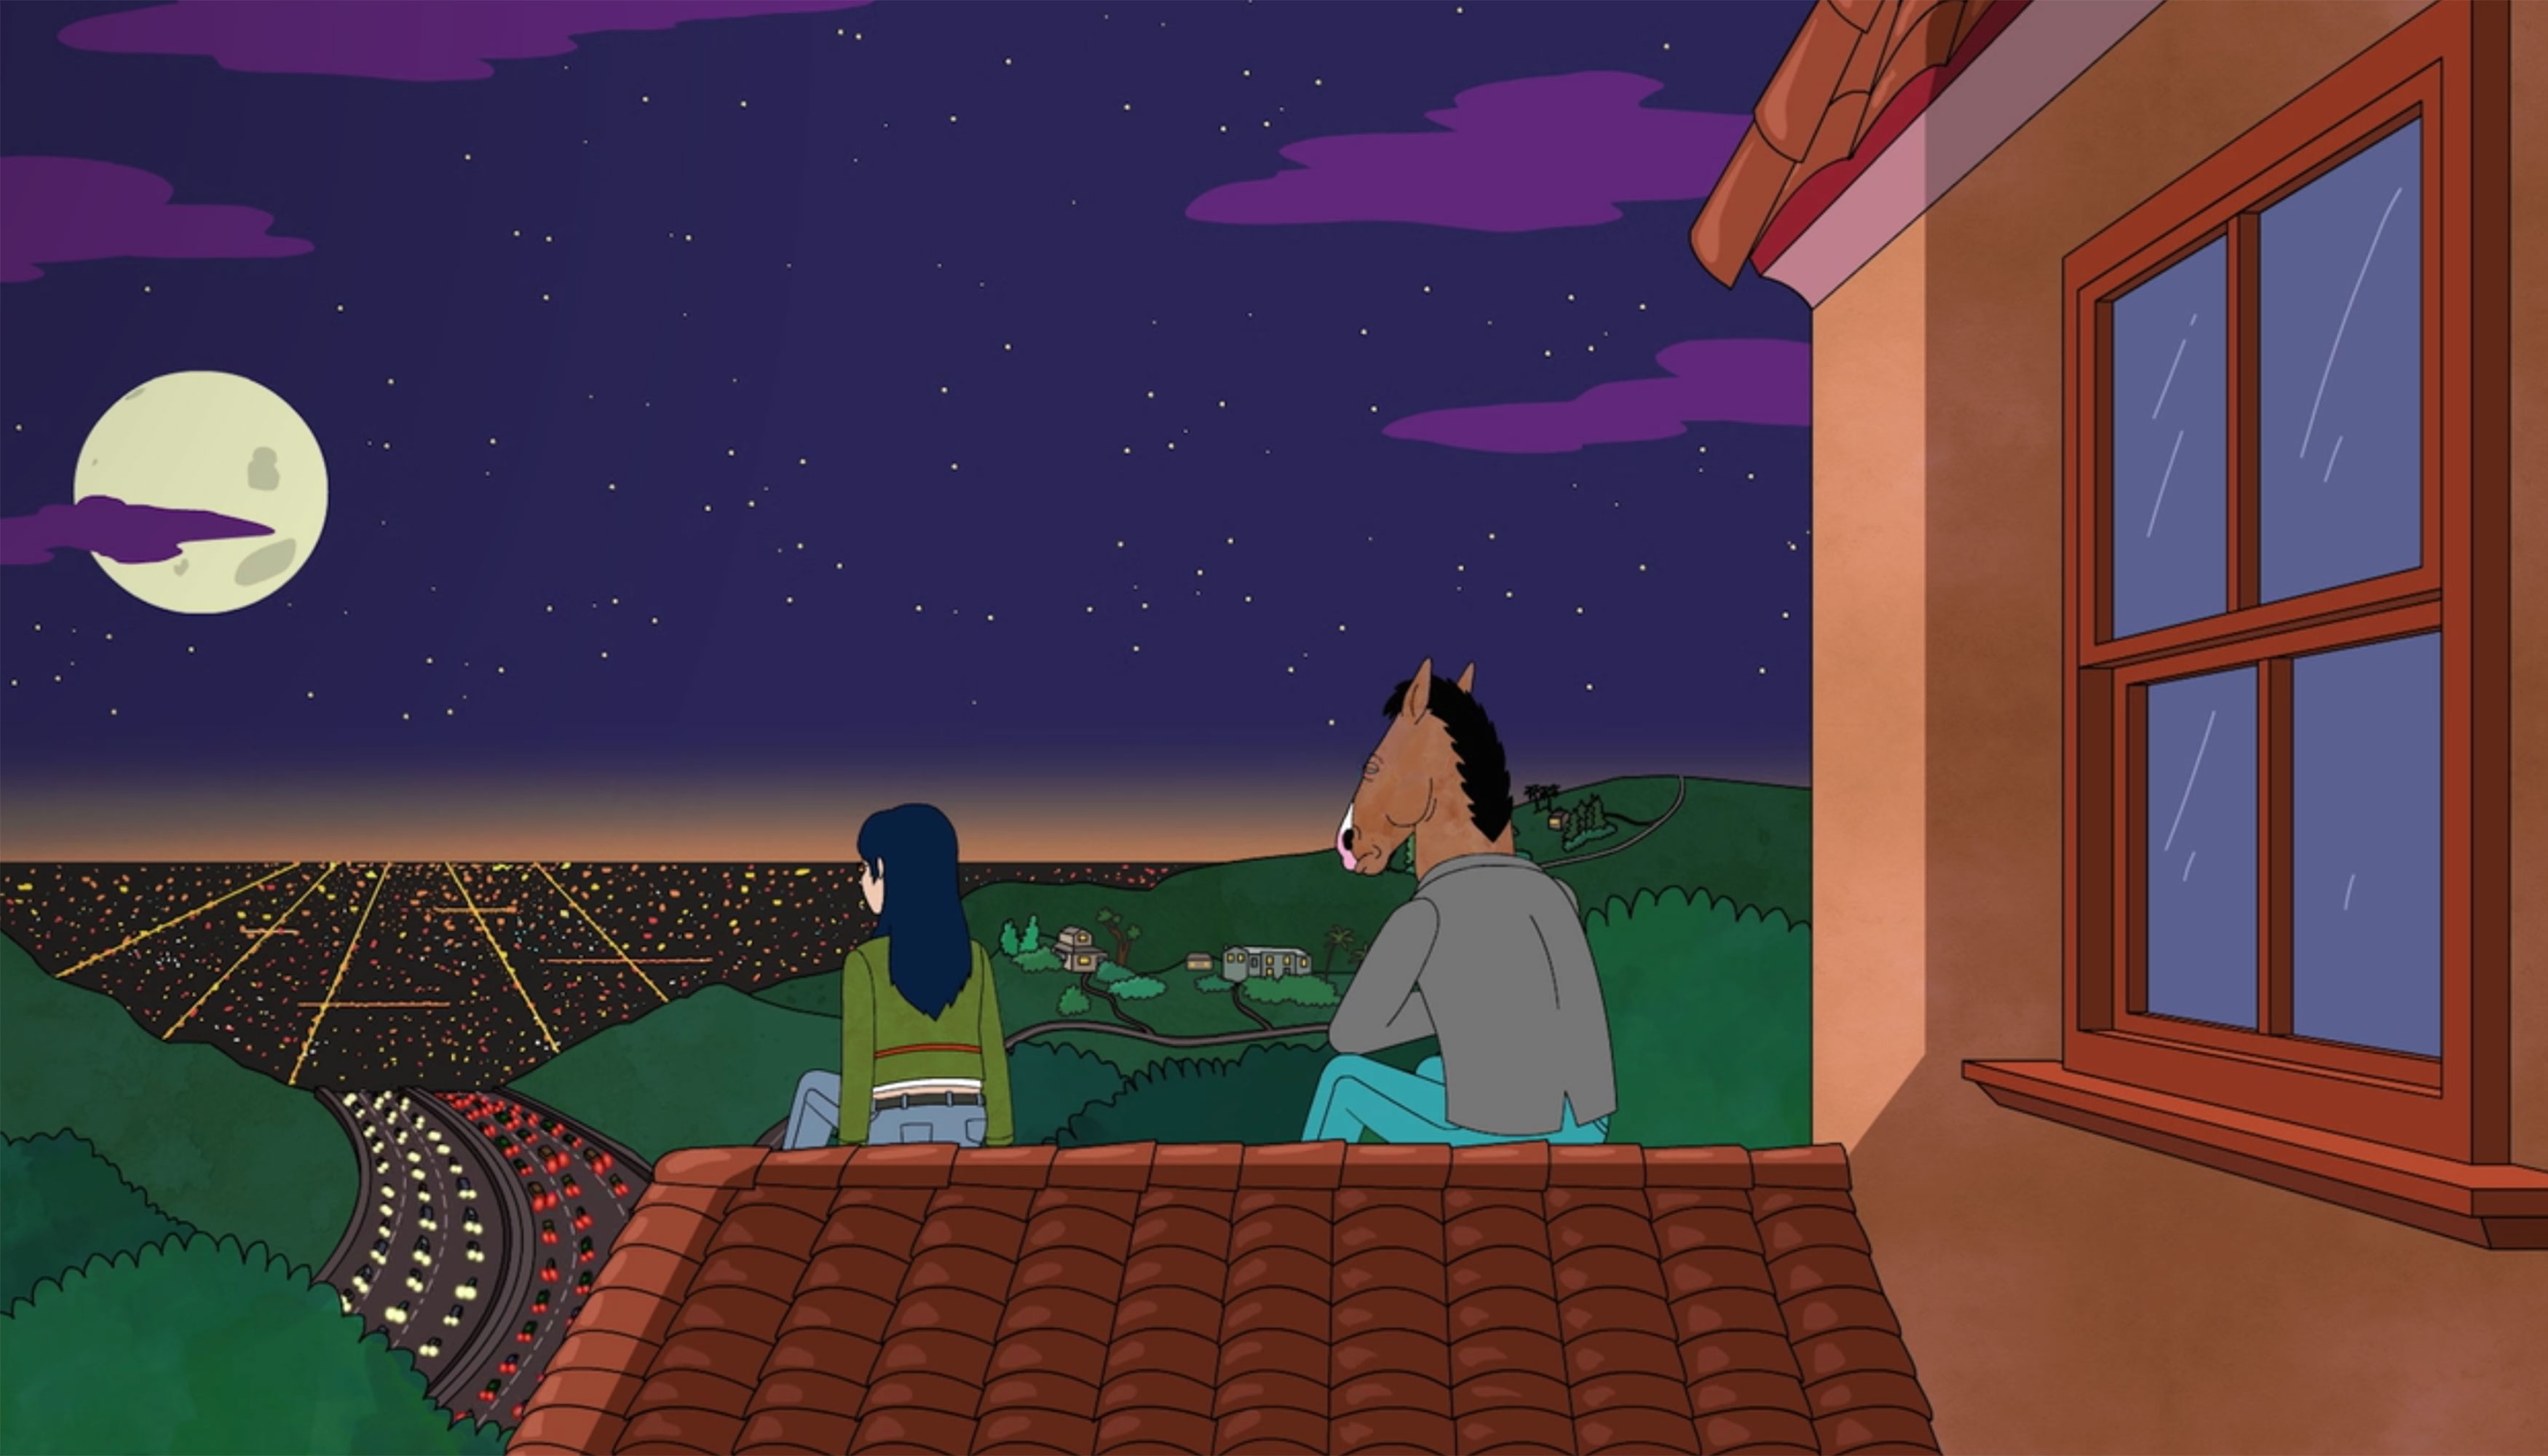 奈飞电视剧《马男波杰克》剧照。波杰克和朋友坐在一所房子的屋顶上，俯瞰着洛杉矶的城市景观。现在是夜晚，天空中有一轮满月和星星。